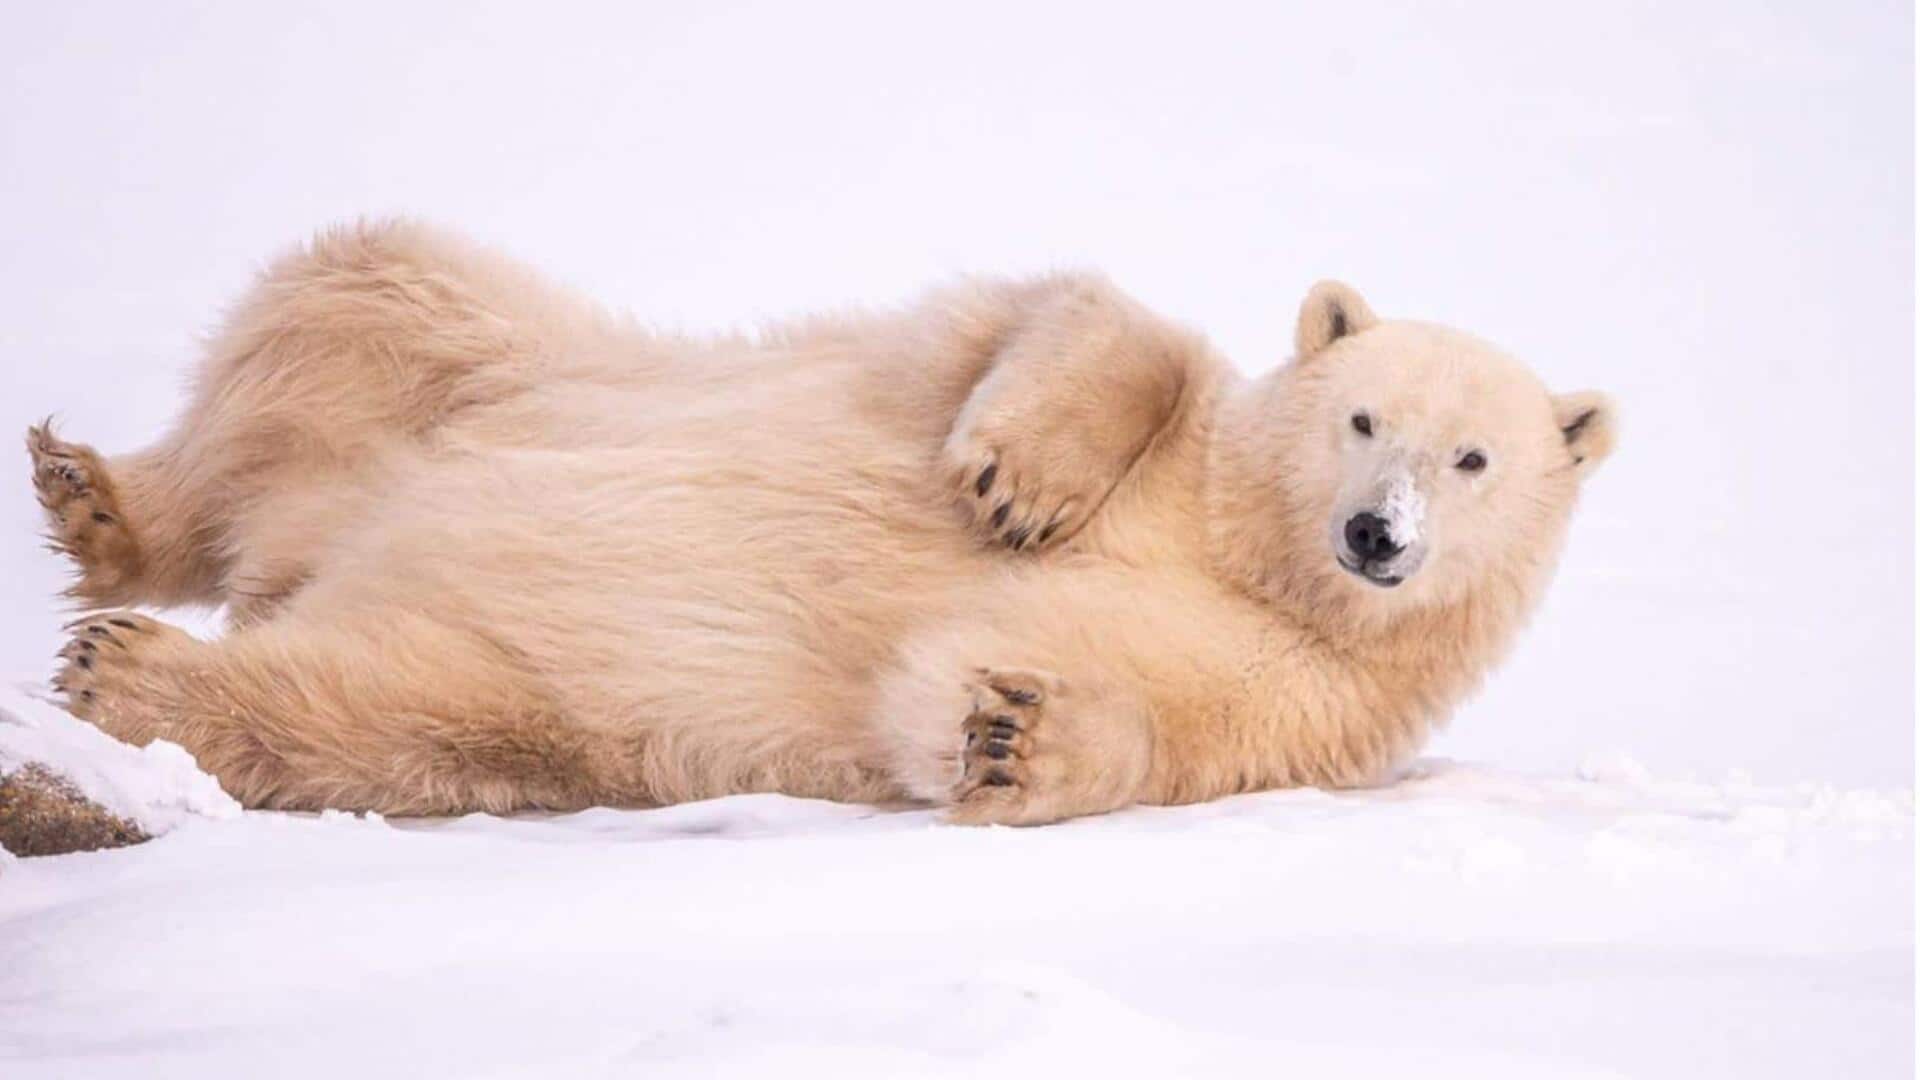 Ikuti ekspedisi beruang kutub Arktik yang megah di Kanada